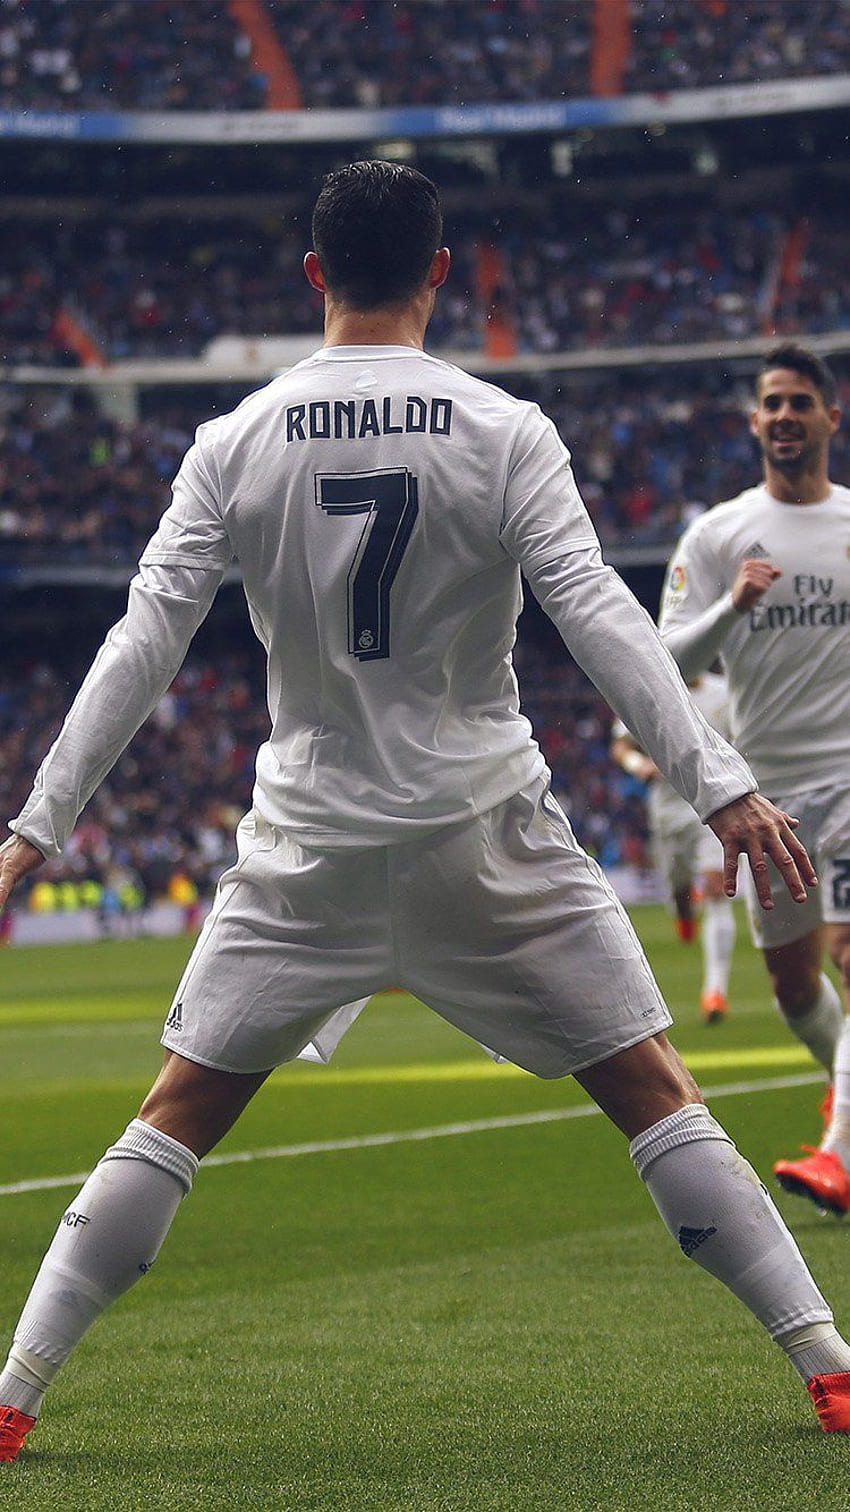 RONALDO NÚMERO 7 REALMADRID SOCCOR IPHONE. Ronaldo, Cristiano Ronaldo, Futebol, CR7 Real Madrid Papel de parede de celular HD